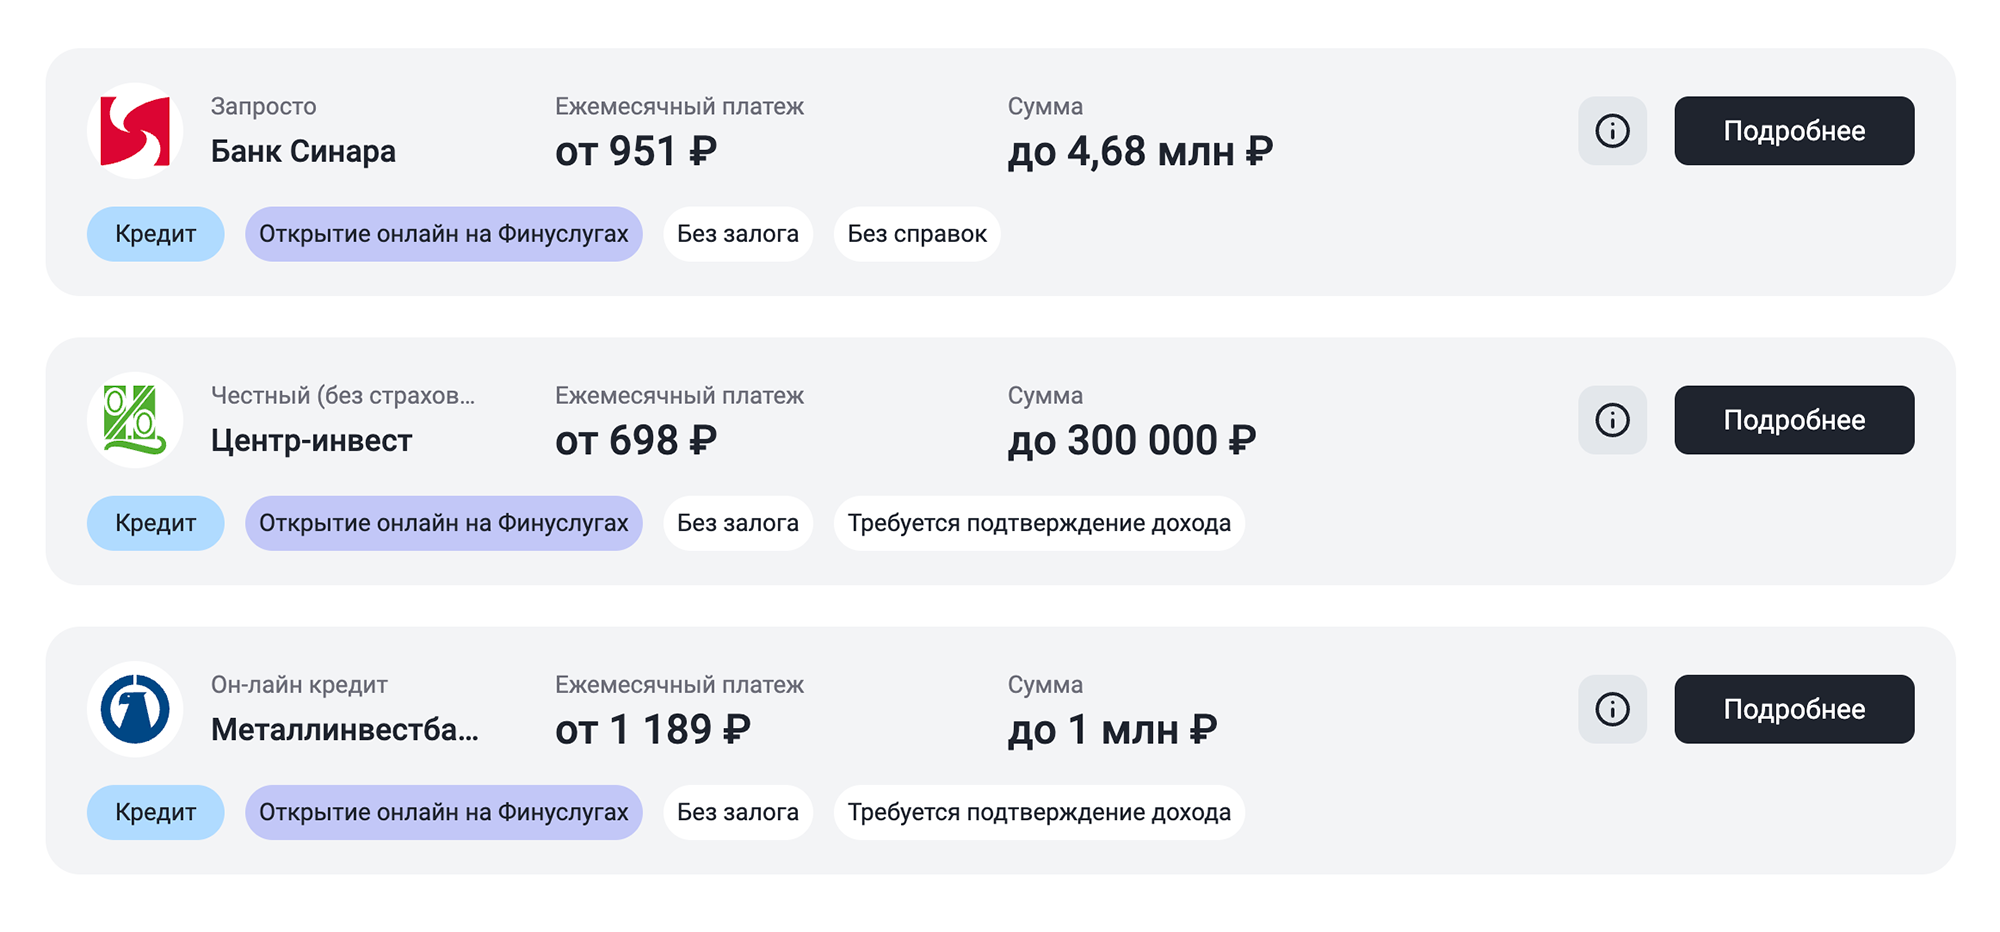 Кредиты онлайн на «Финуслугах» предлагают только три банка. Источник: finuslugi.ru